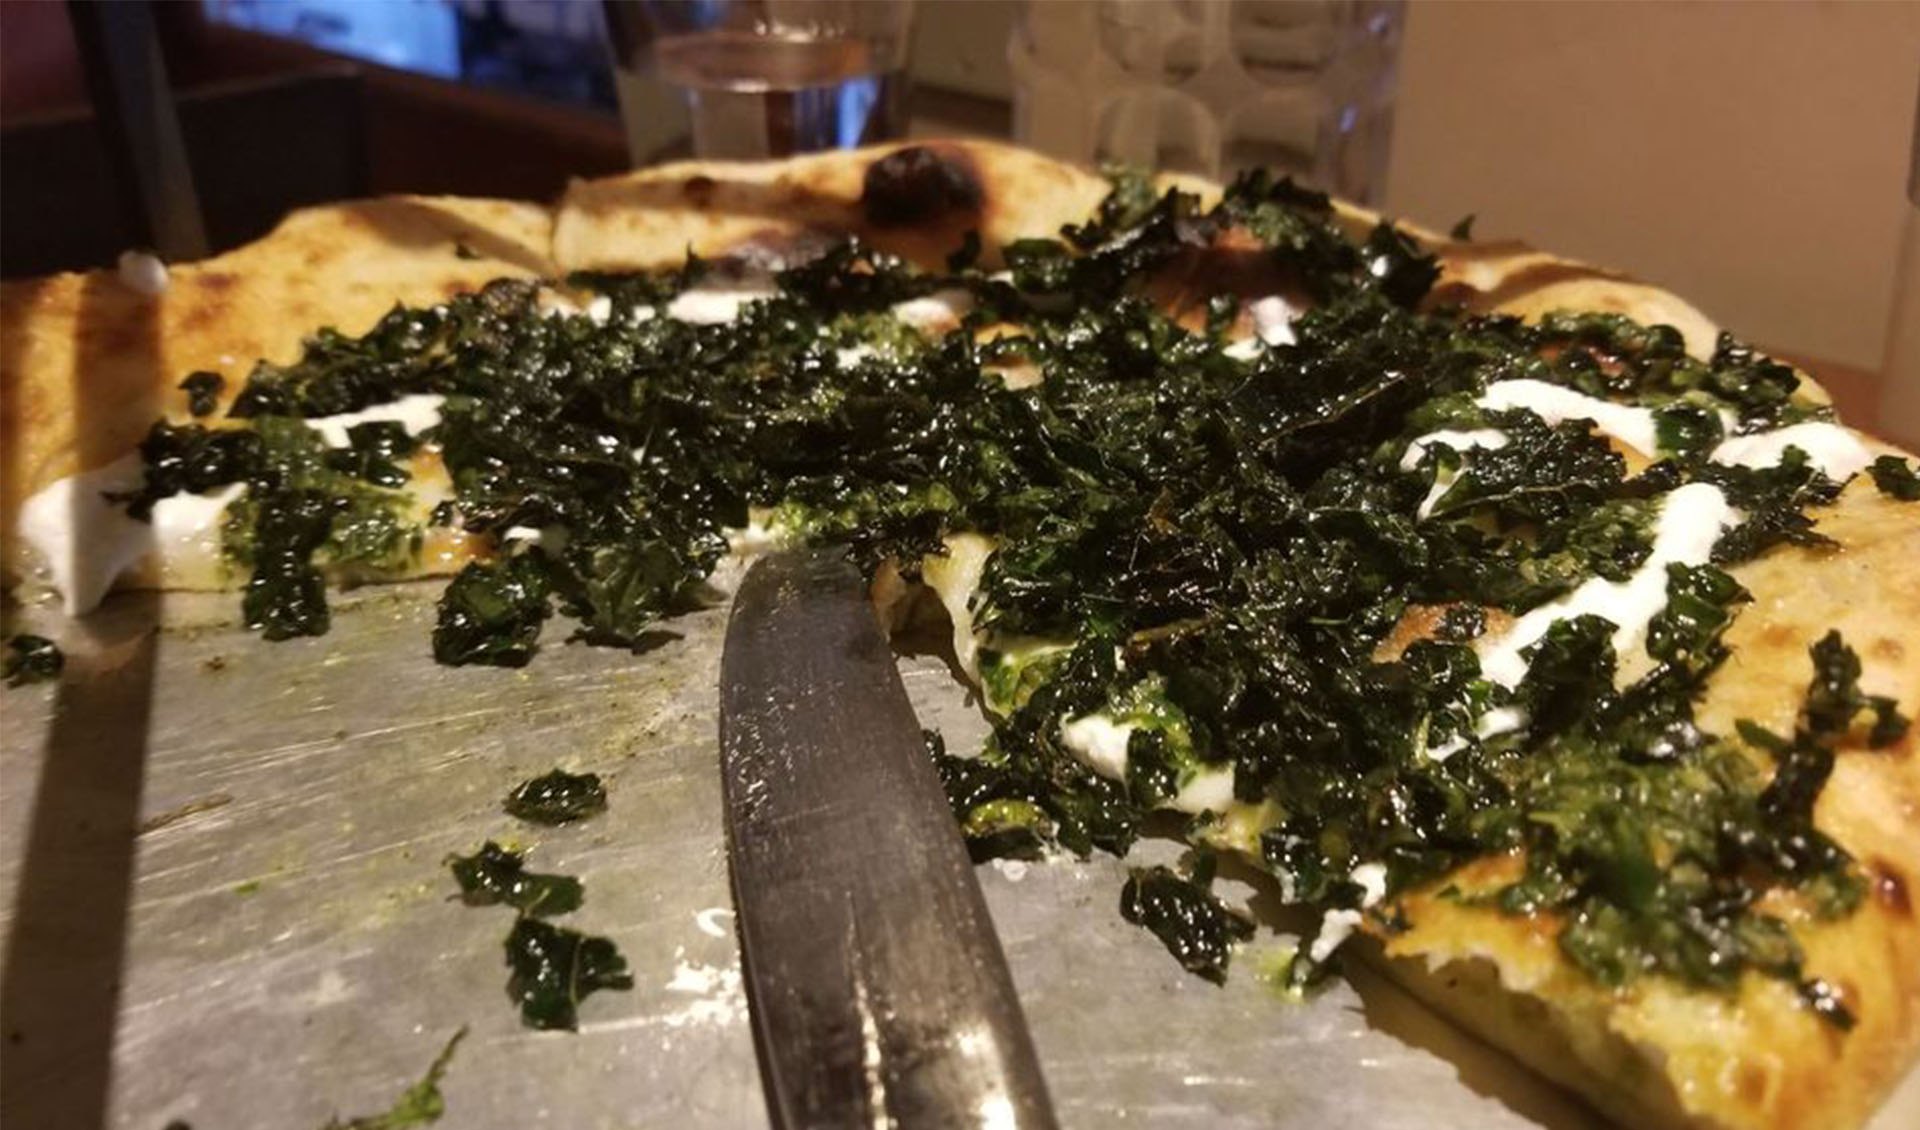 kale pizza